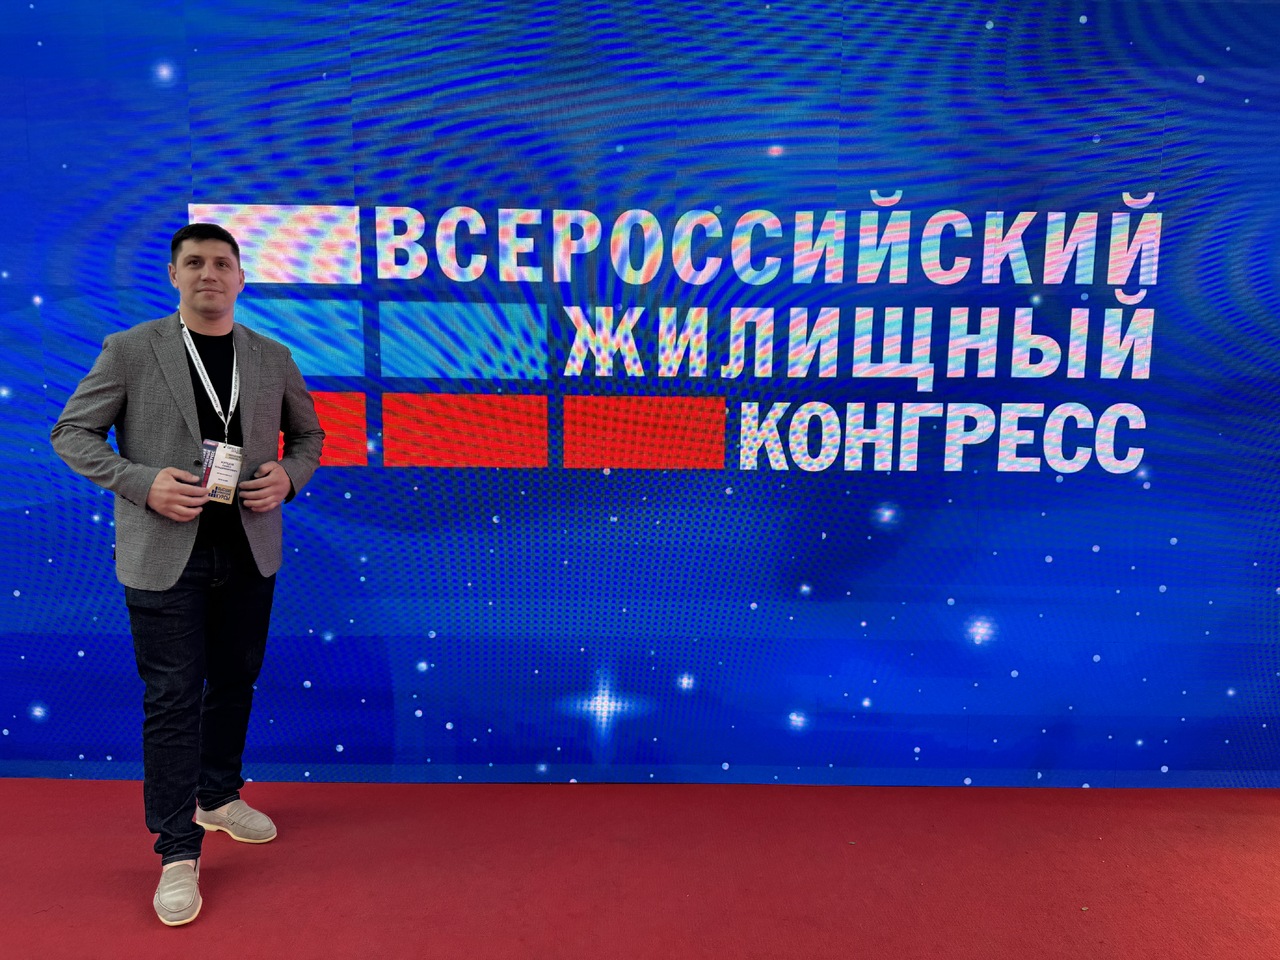 Всероссийский жилищный конгресс в Сочи — 20240